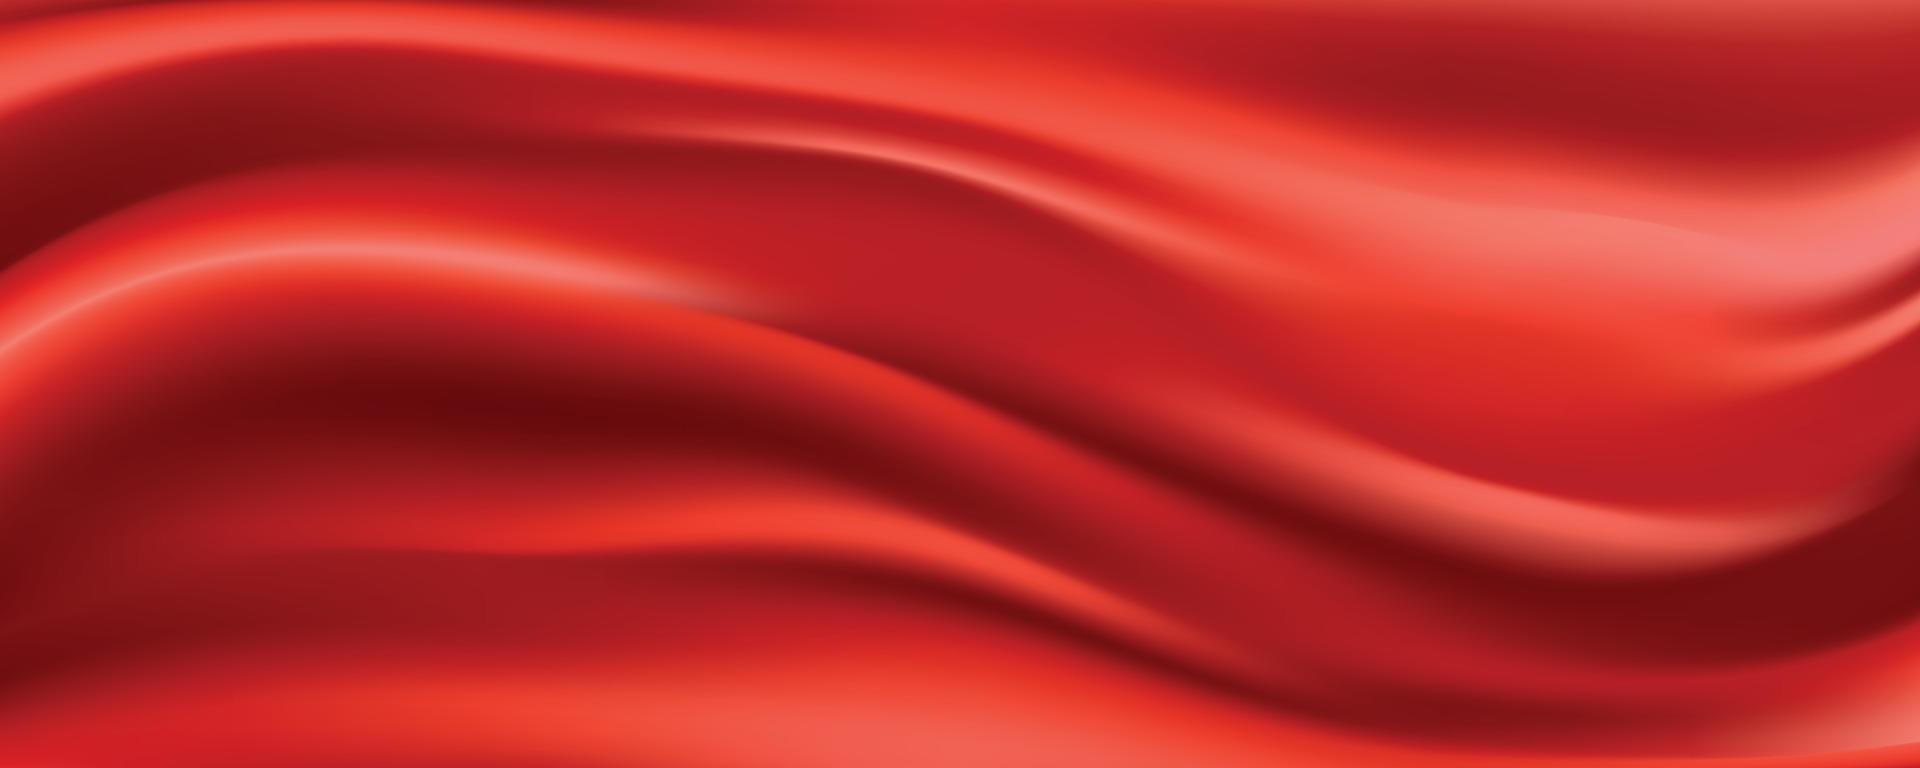 röd silke tyg abstrakt bakgrund vektor